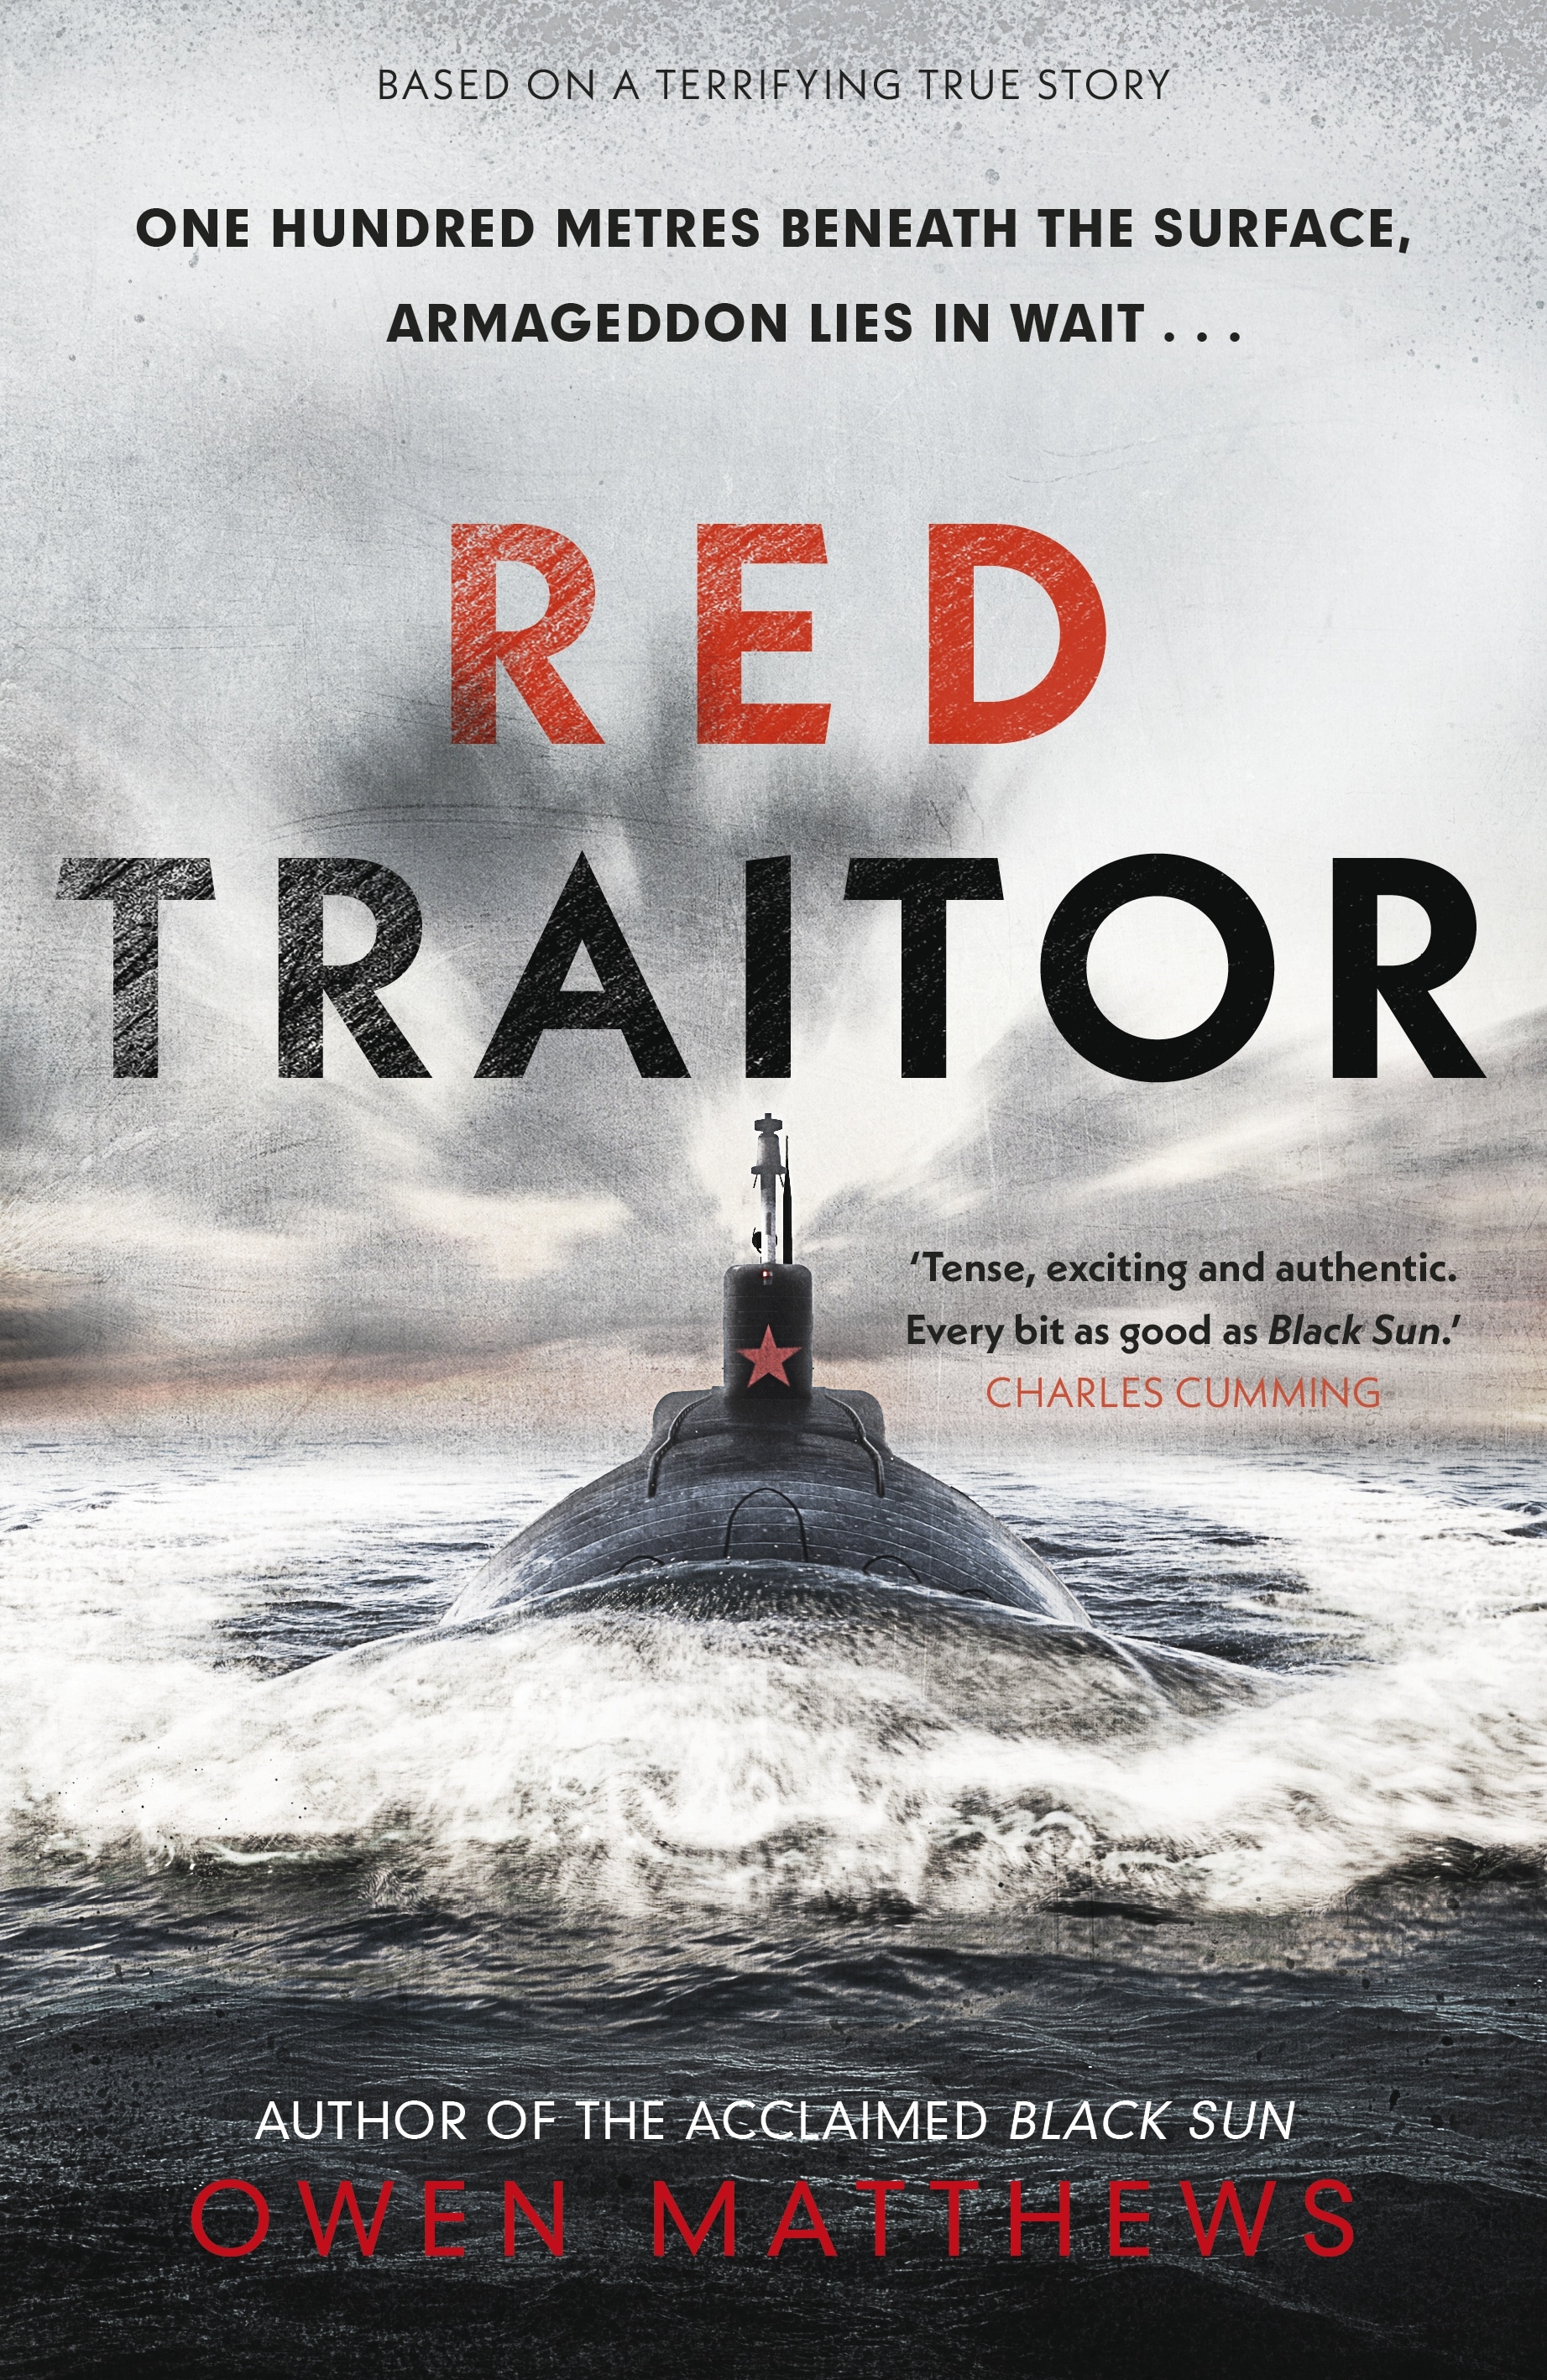 Book “Red Traitor” by Owen Matthews — July 29, 2021